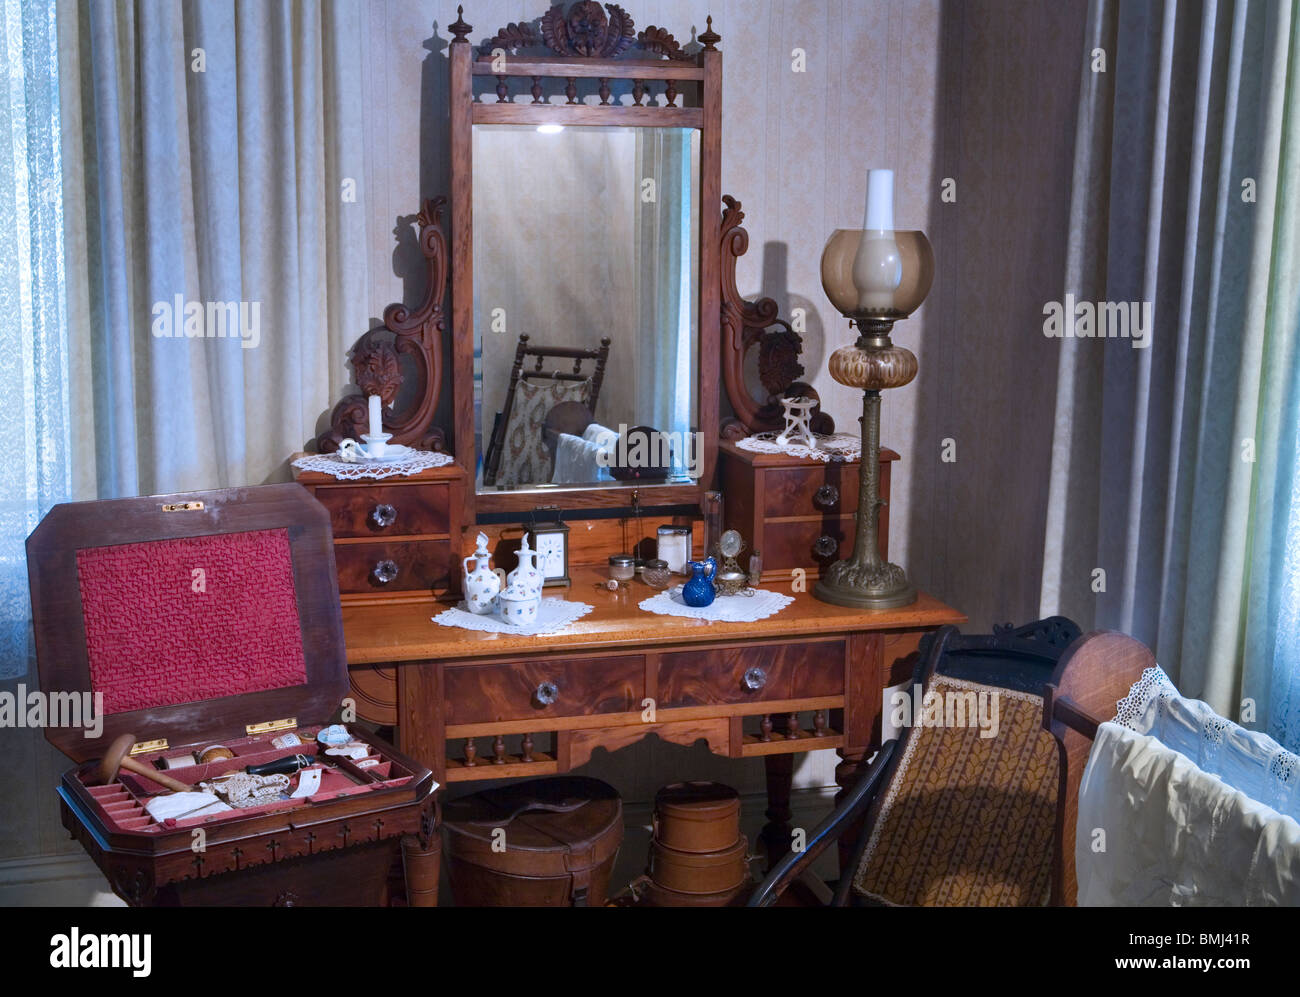 Una diciannovesima (XIX secolo) (1800s) camera da letto con uno specchio di cortesia e igiene personale paraphernalia, Auckland, Nuova Zelanda Foto Stock